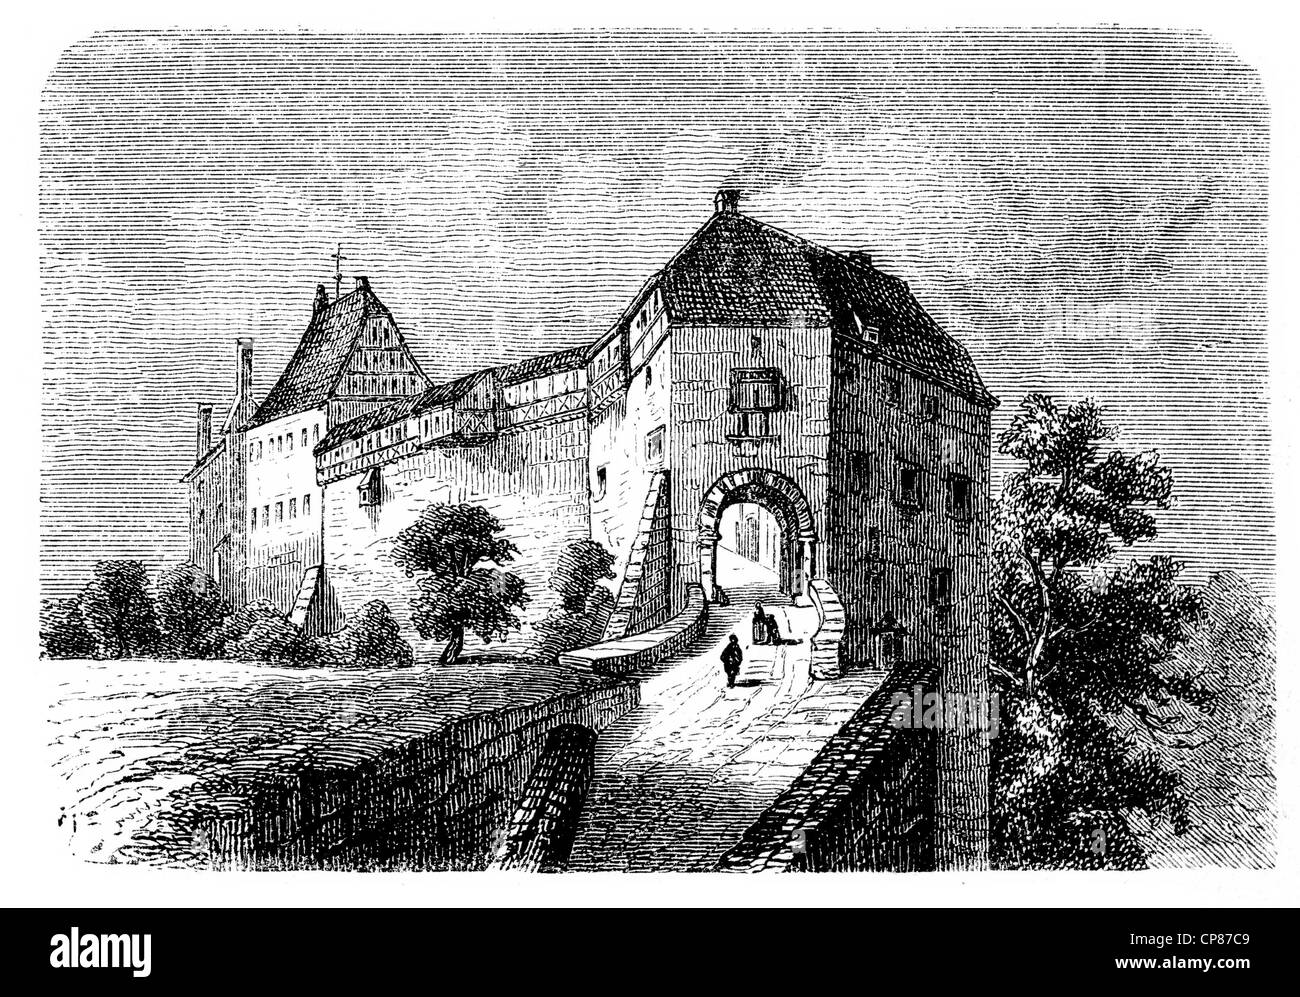 Château de Wartburg dans le 18e siècle, Eisenach, Allemagne, gravure historique, 19e siècle , Die Wartburg im 18. Jahrhundert, l'assurance-emploi Banque D'Images